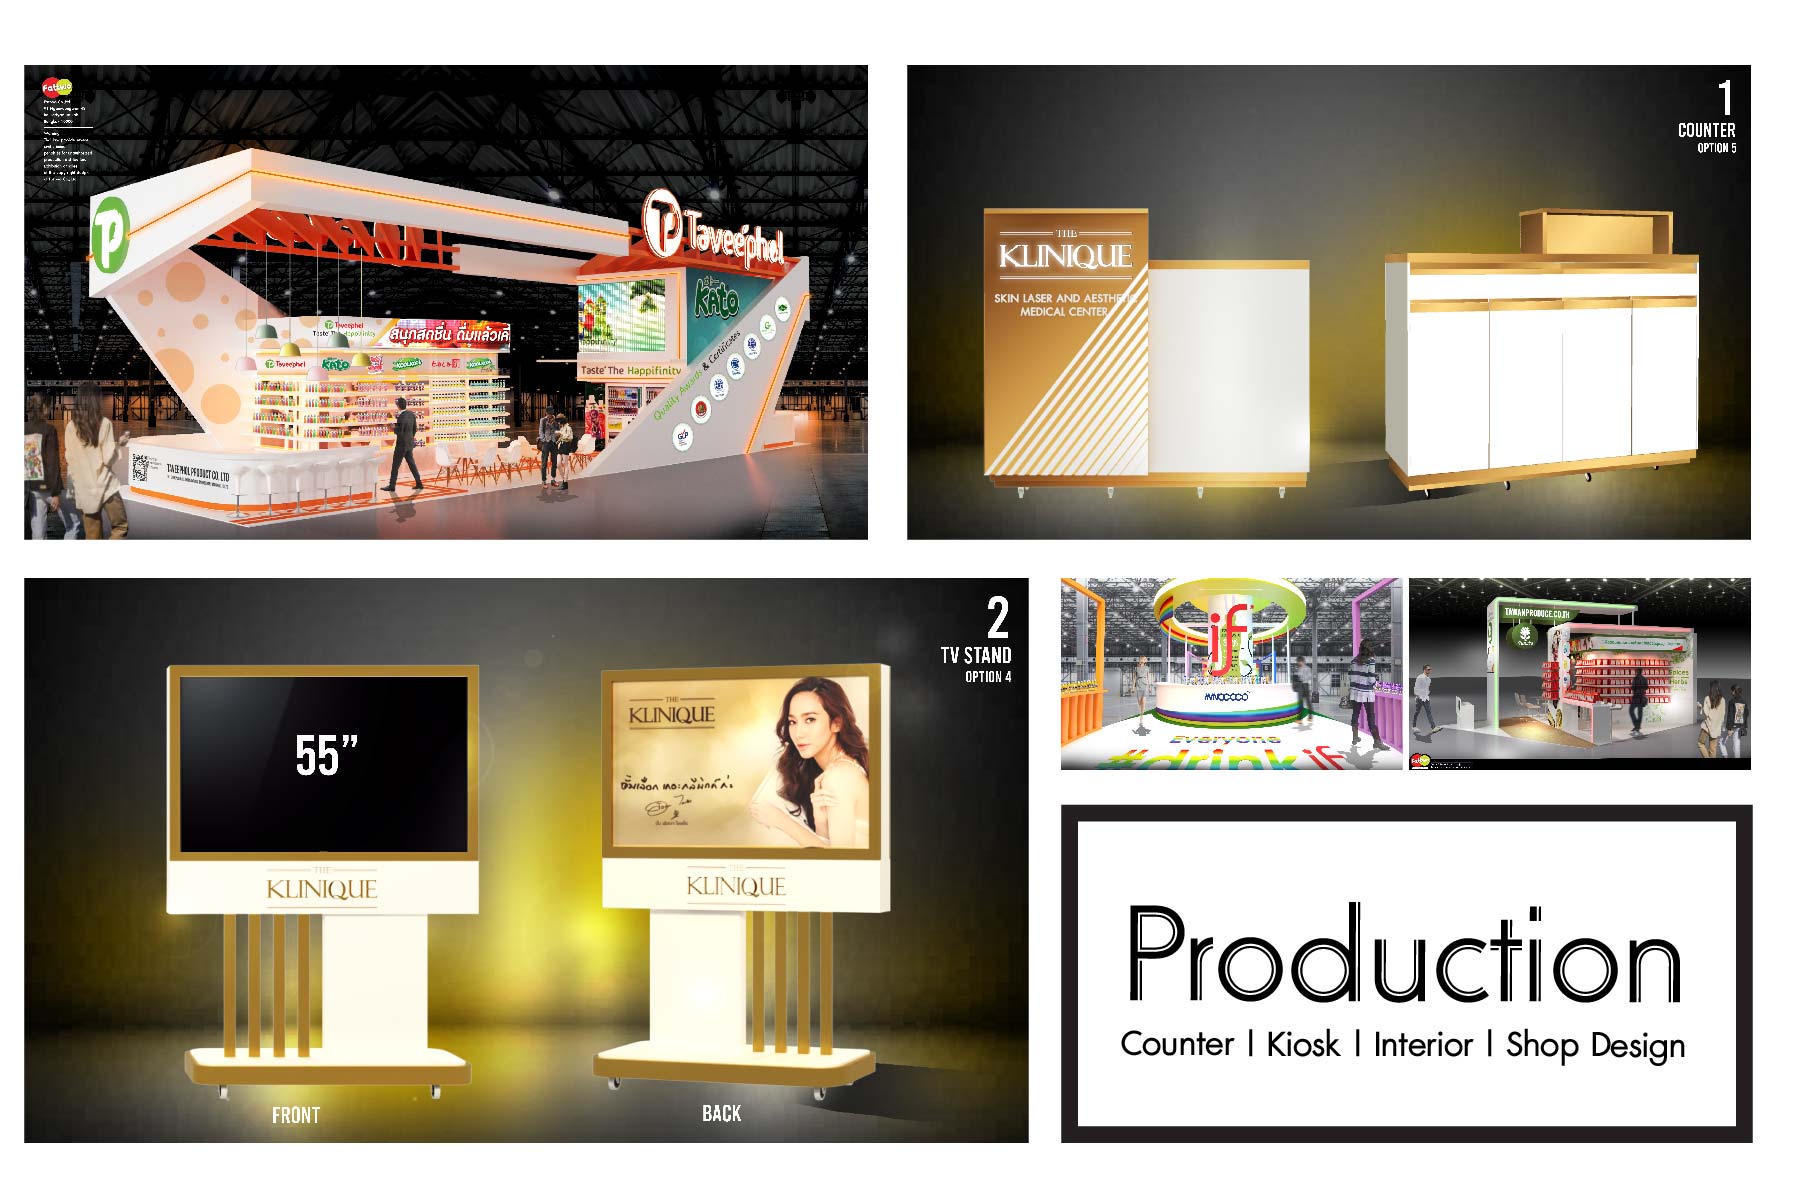 Production [ Counter | Kiosk | Interior | Shop Design ]